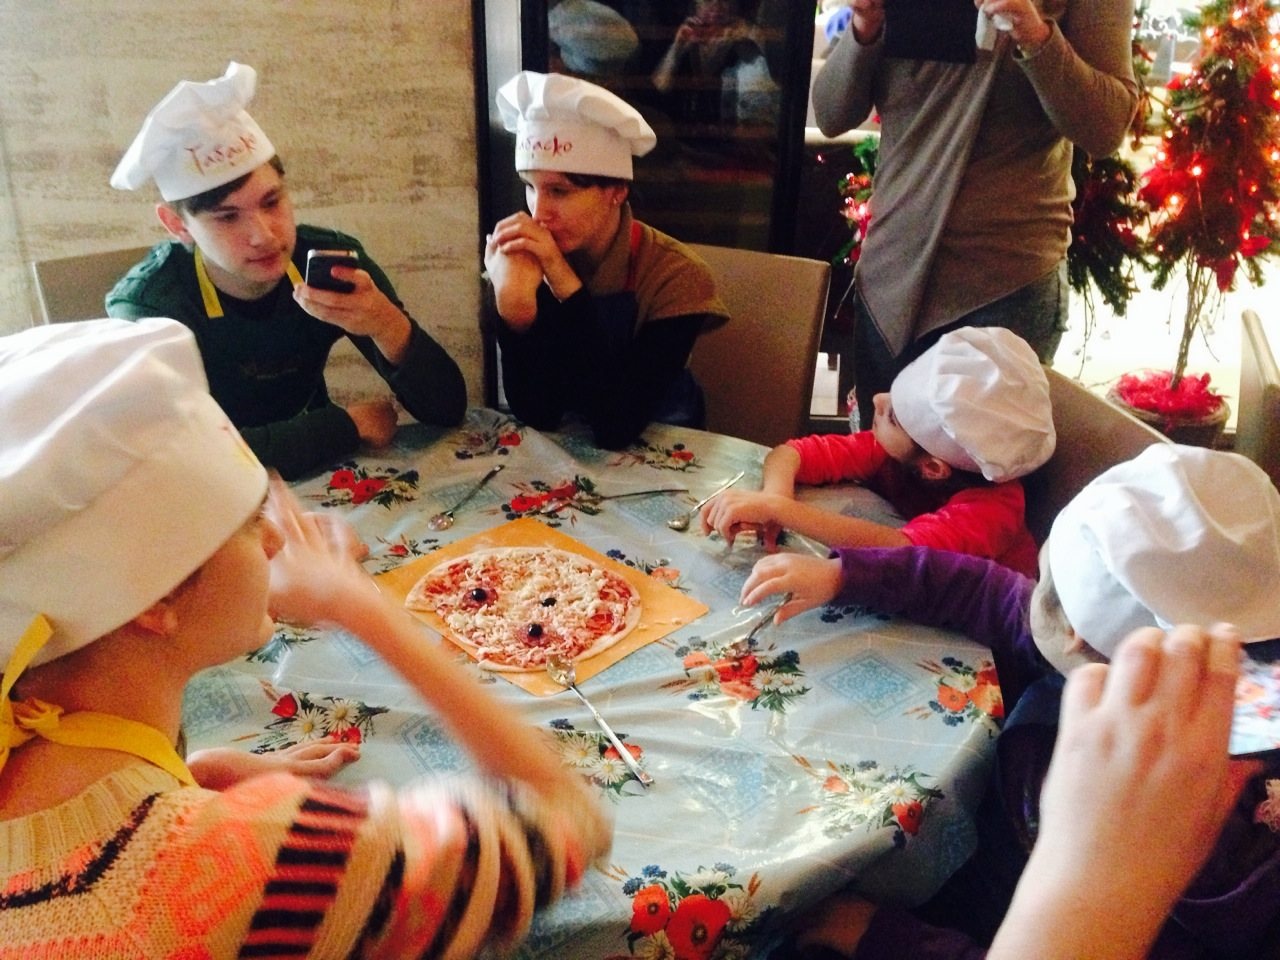 Участники проекта «Цветы жизни» научатся делать пиццу